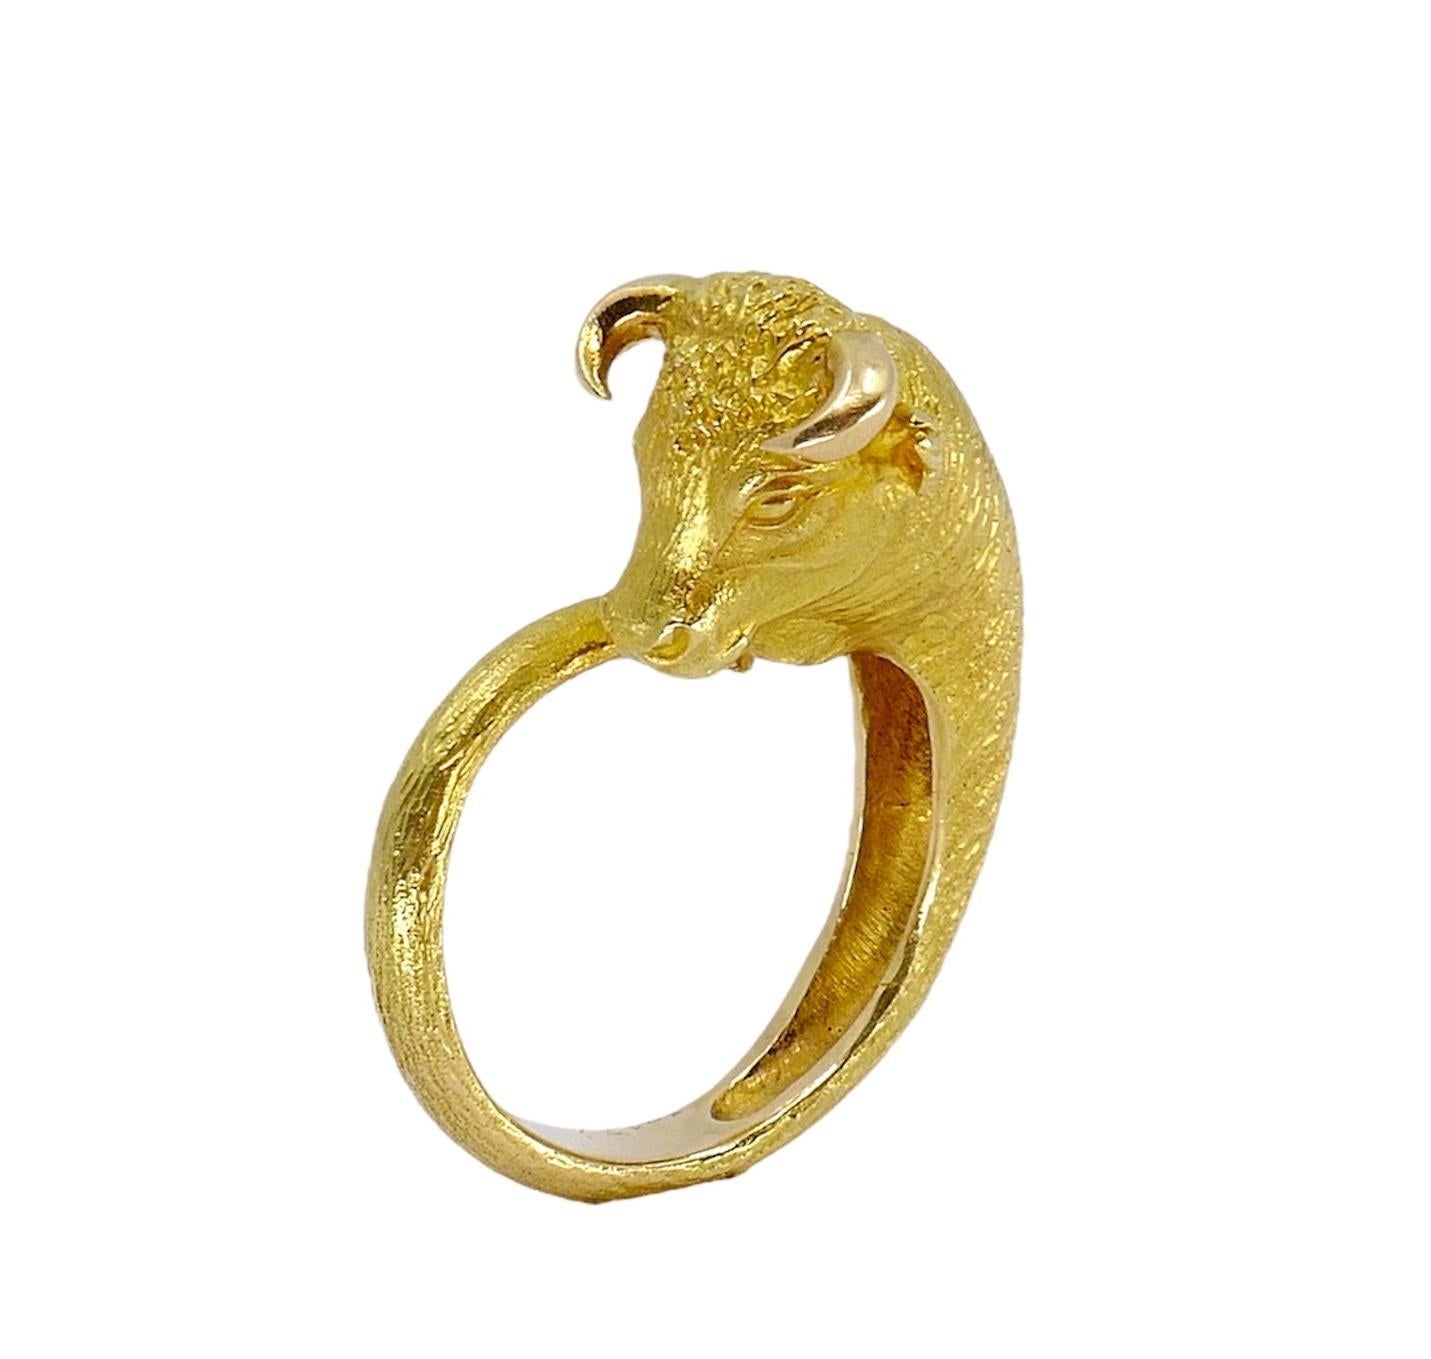 Dieser Ring aus 18 Karat Gold wurde in den 1970er Jahren von dem angesehenen Juwelier George L'Enfant für Cartier Paris gefertigt und zeigt ein kühnes Stier Taurus-Motiv, das Stärke und Widerstandsfähigkeit symbolisiert. Mit einer Größe von 7,5 und